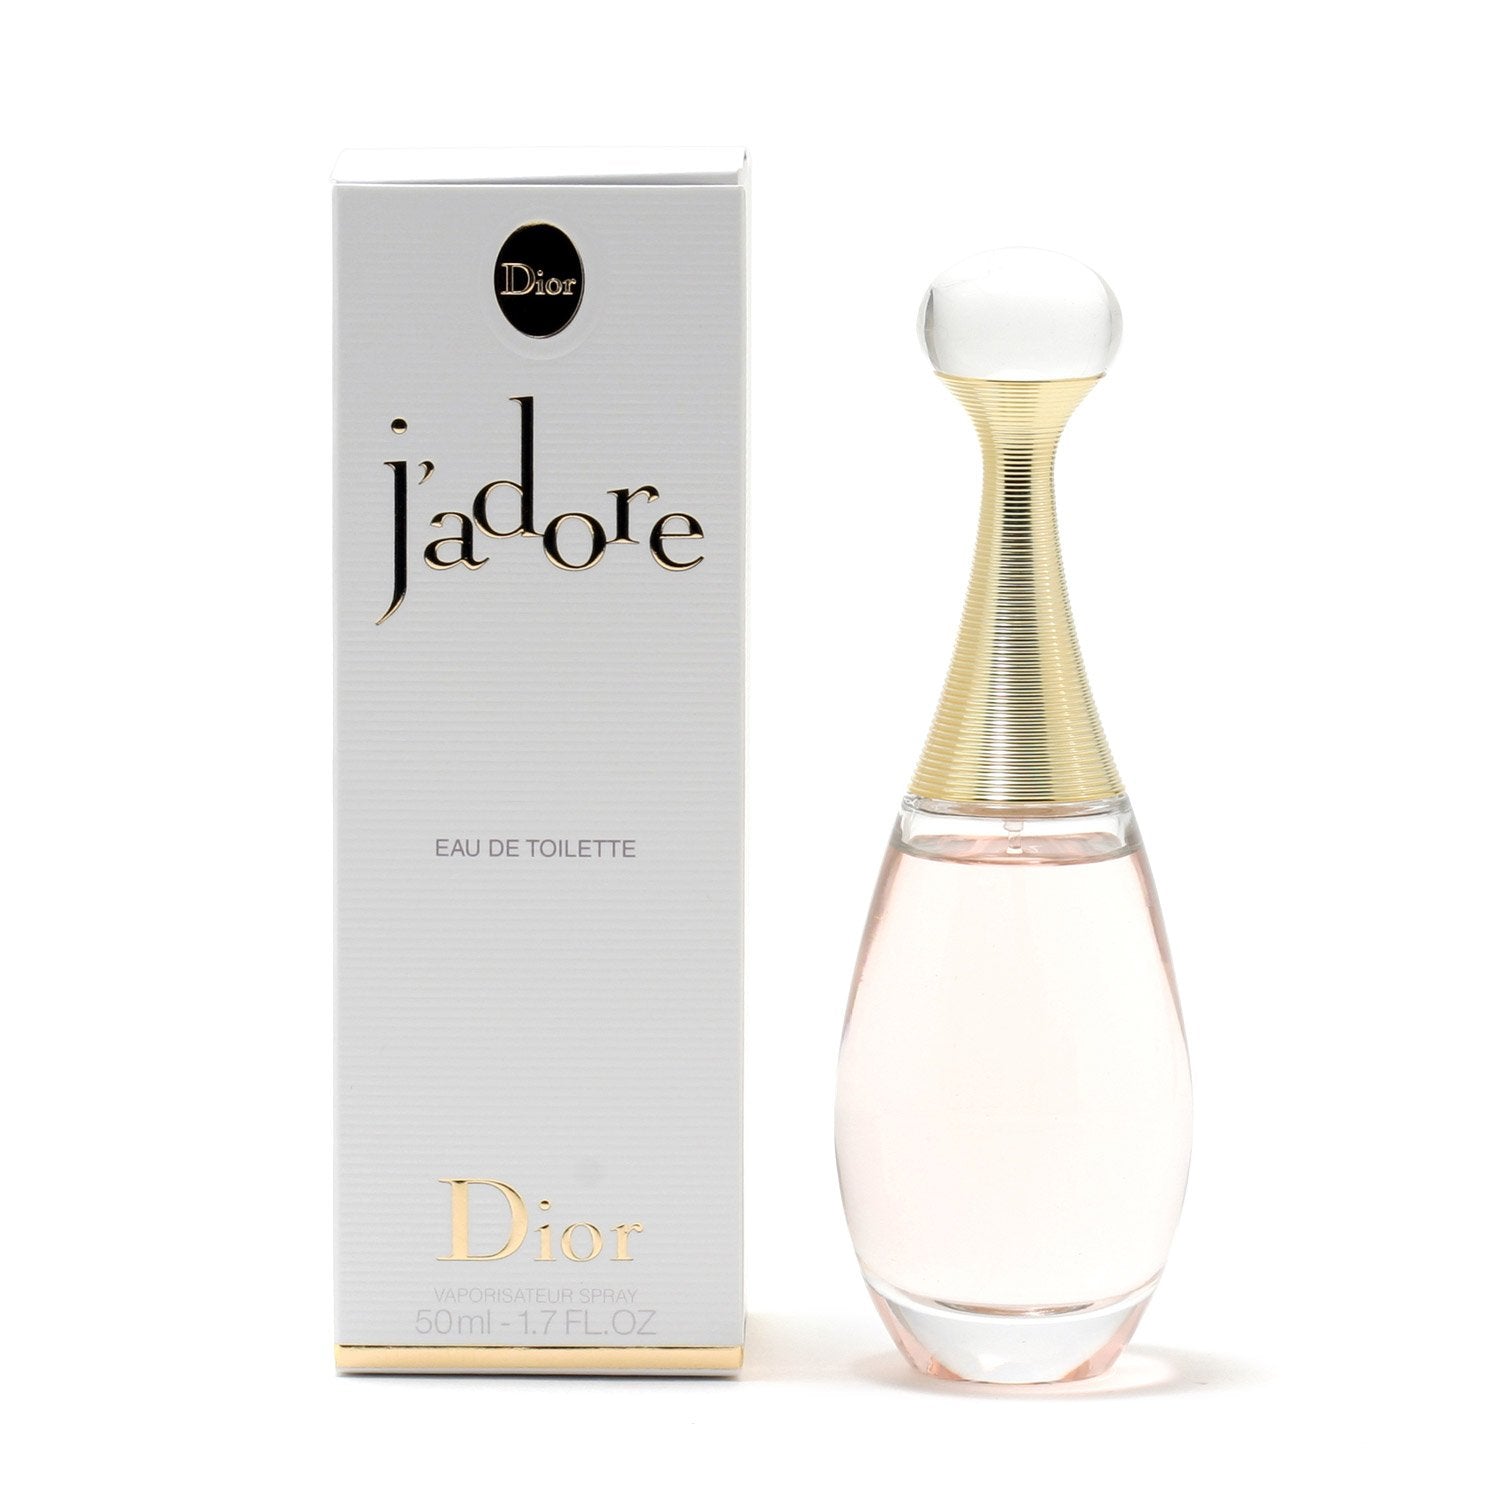 Christian Dior J'Adore Women's 1.7 oz Eau De Parfum Spray 